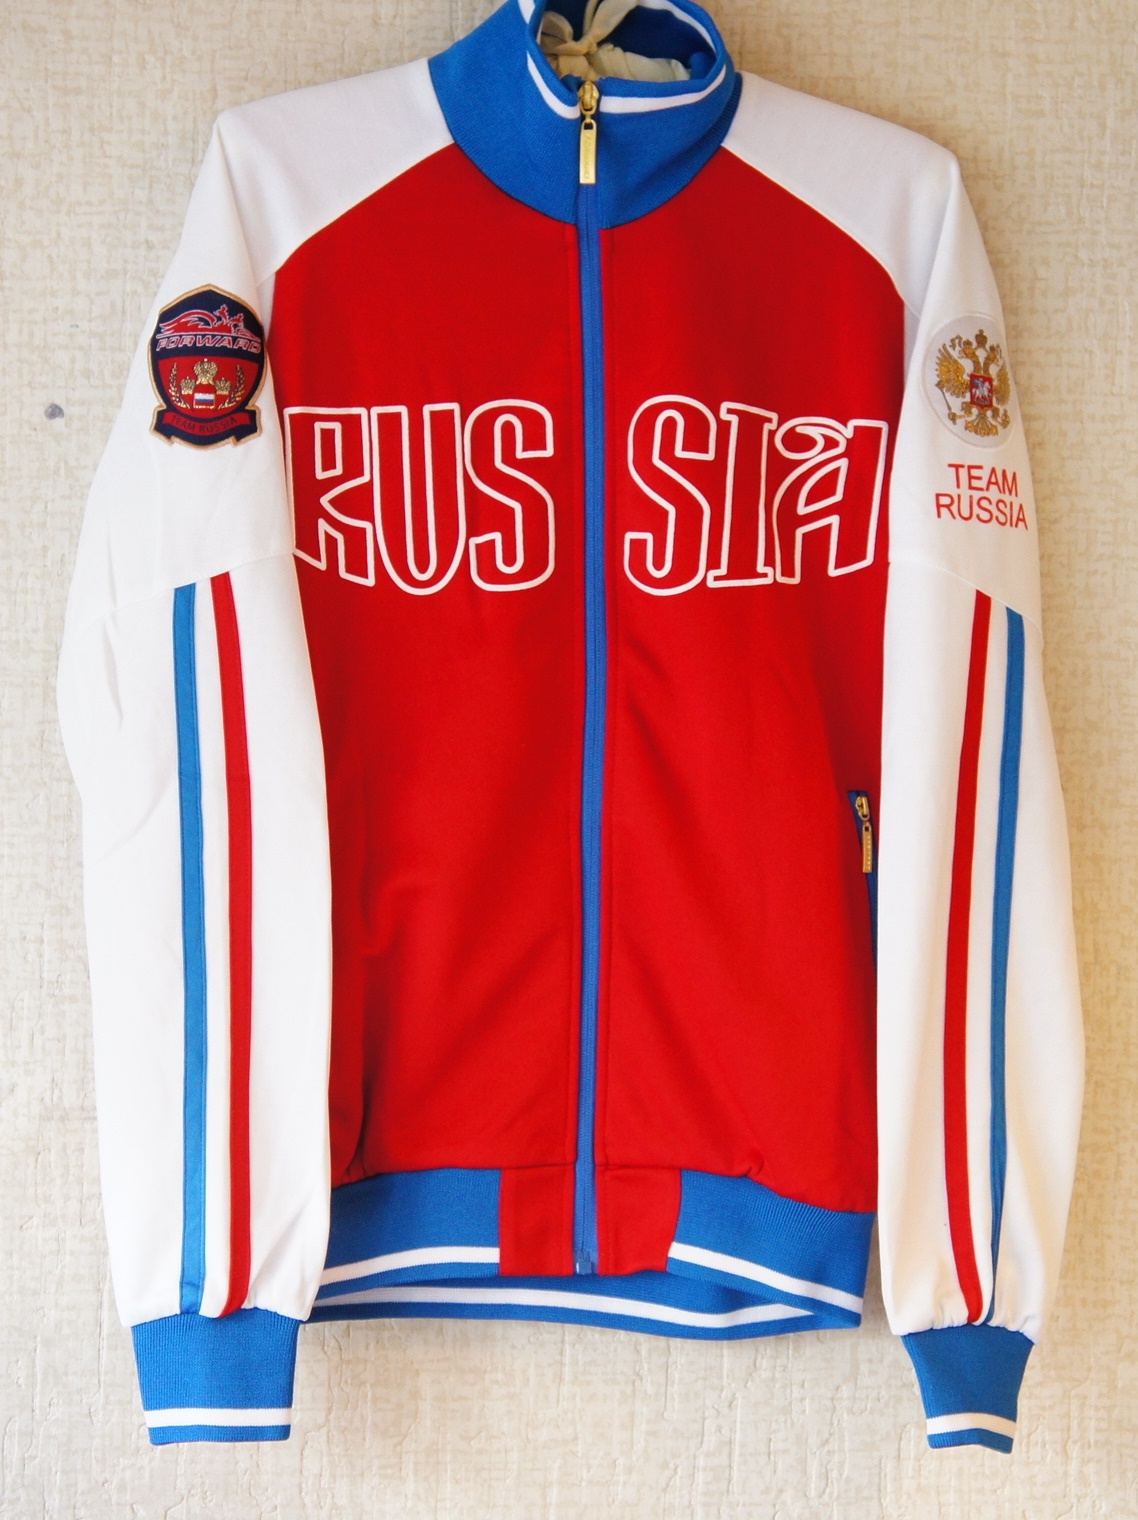 ロシア代表 オリンピックウェア グッズ リャビーナ ロシアの工芸 雑貨 マトリョーシカ販売 通販